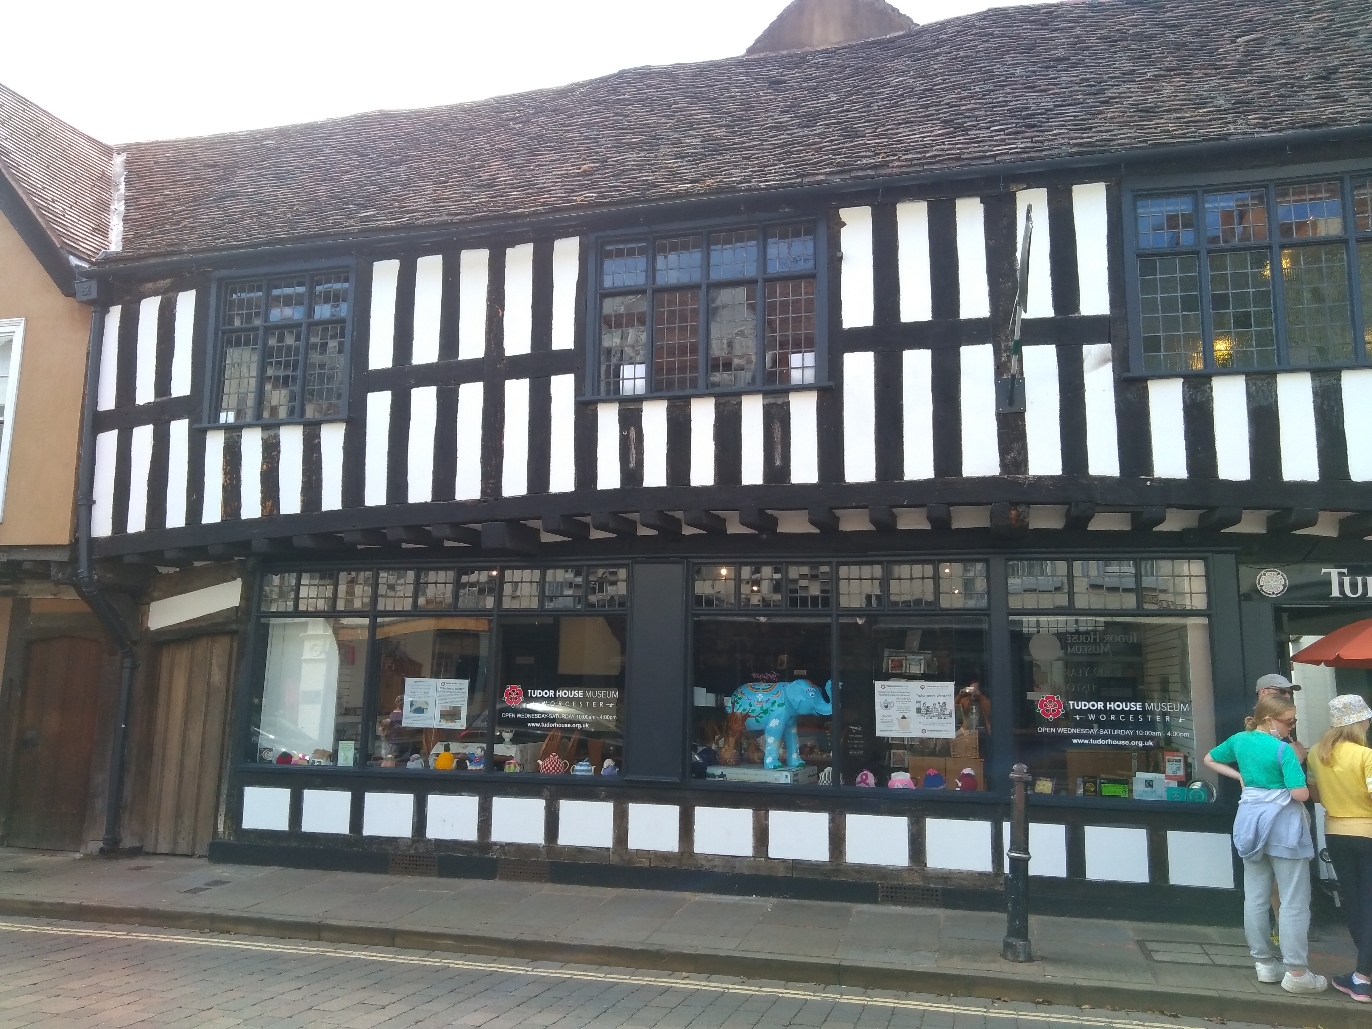 Tudor shops, Worcester